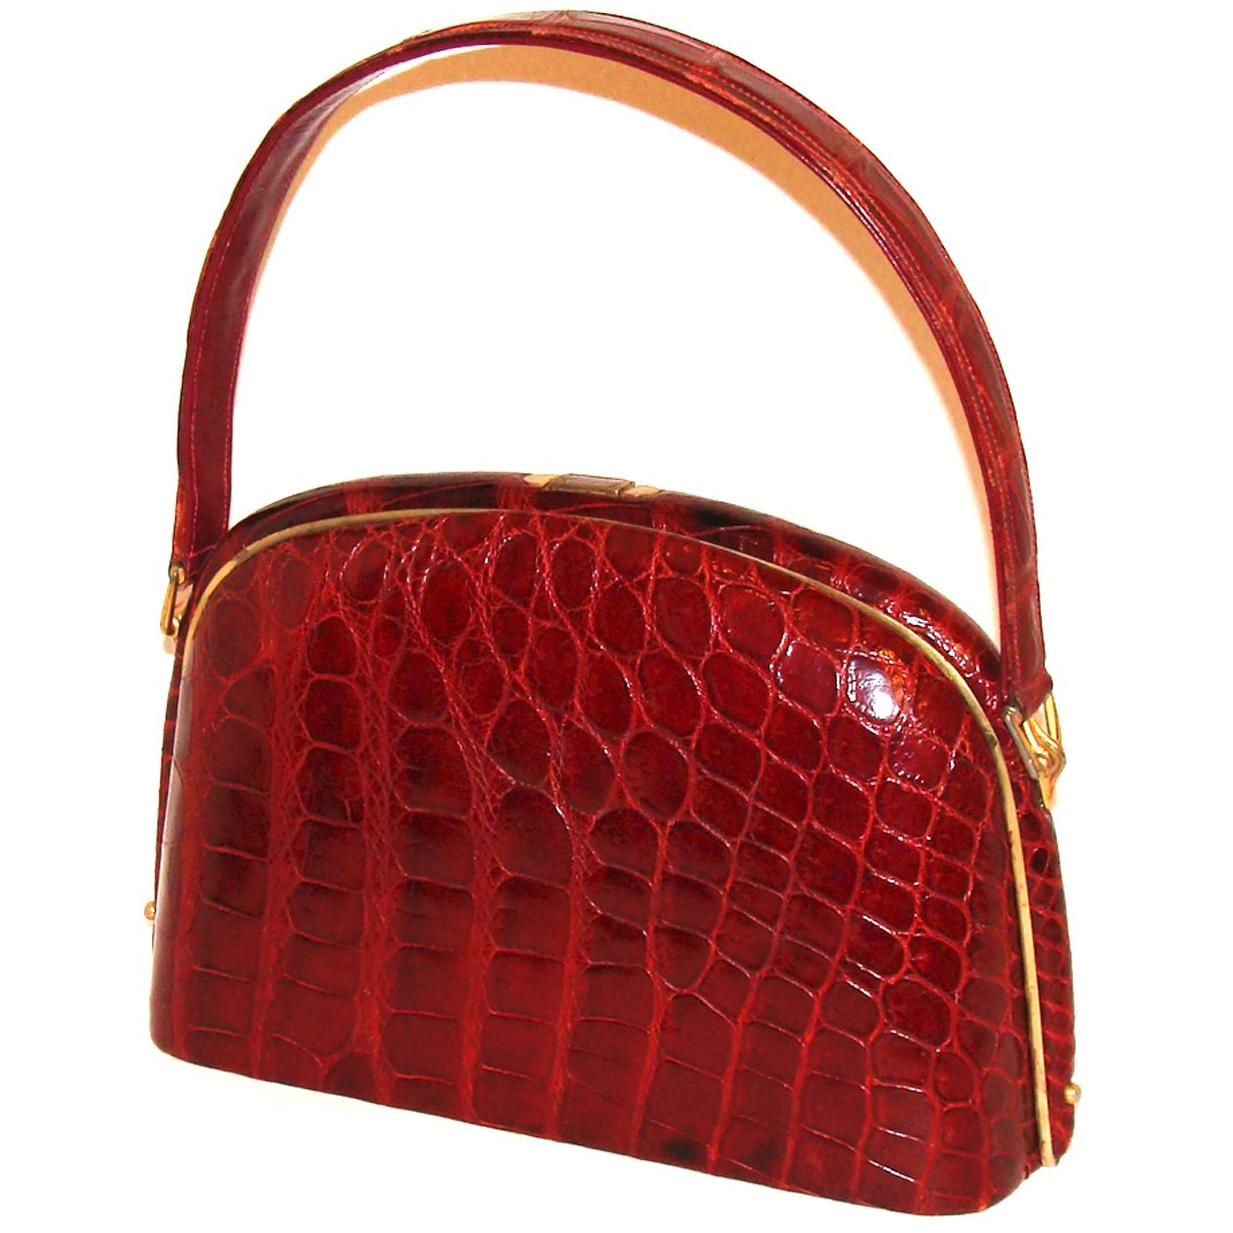 Architectural Deep Red Alligator Handbag Vintage FALL! For Sale